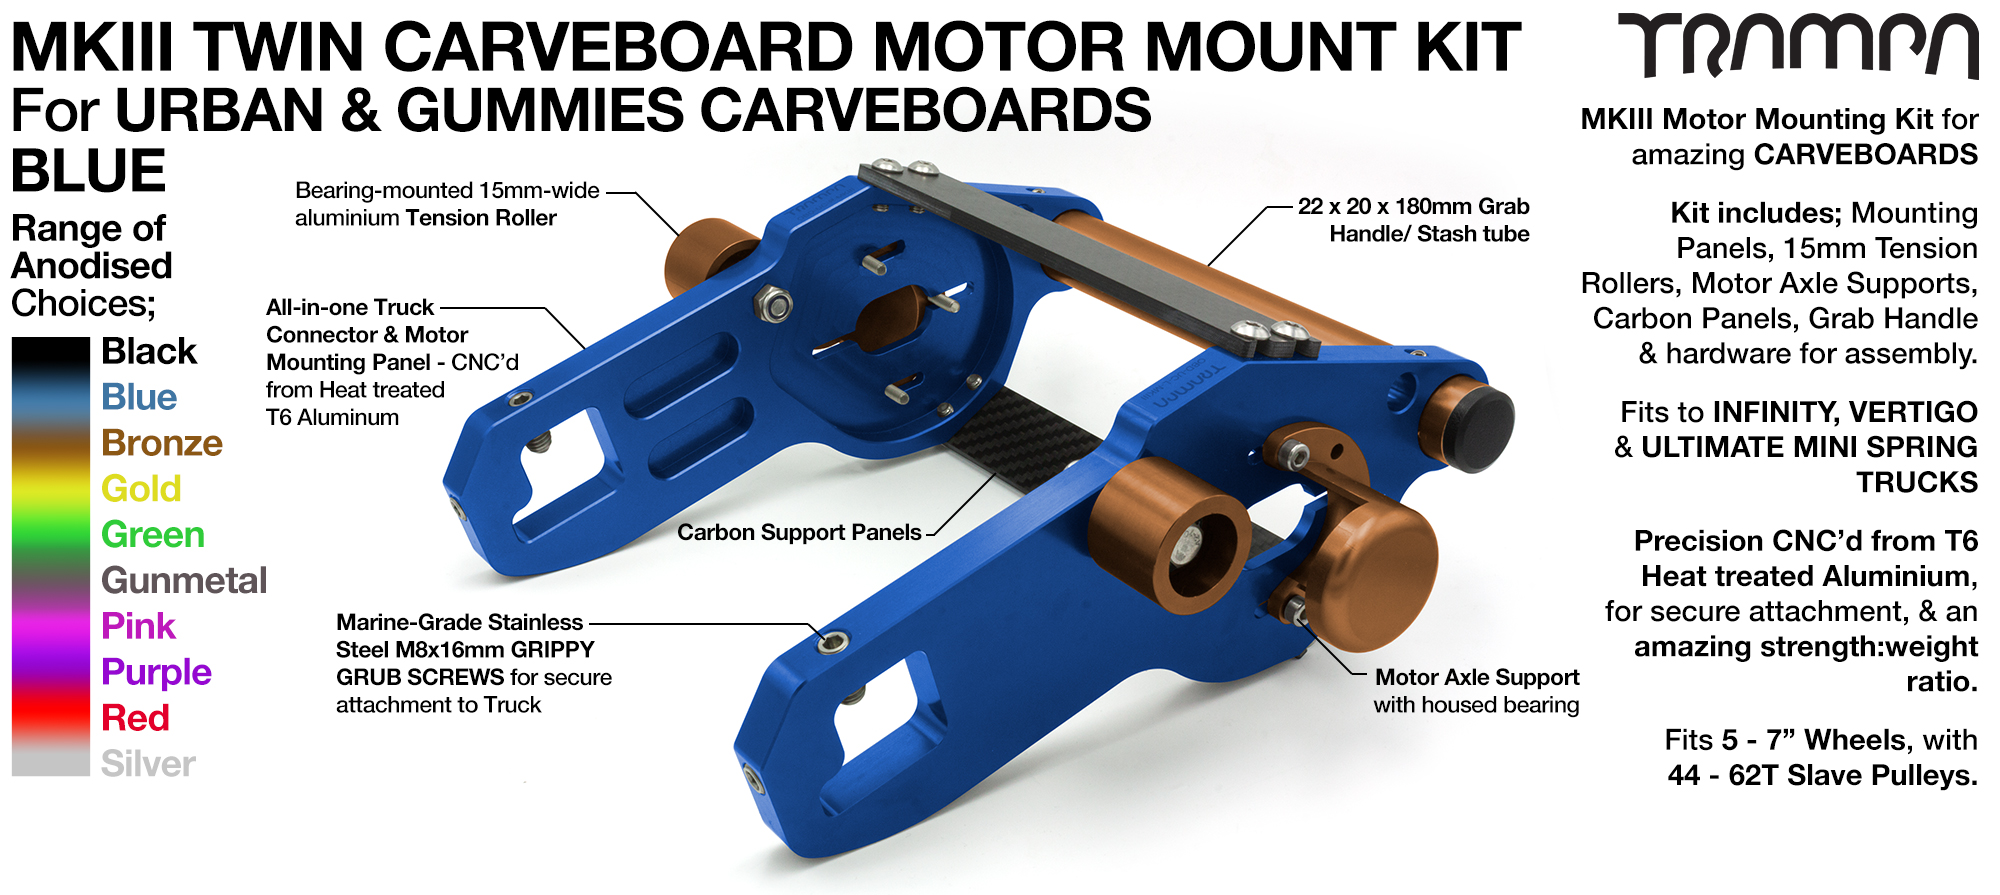 Mk III CARVE BOARD Motor Mount Kit - TWIN BLUE